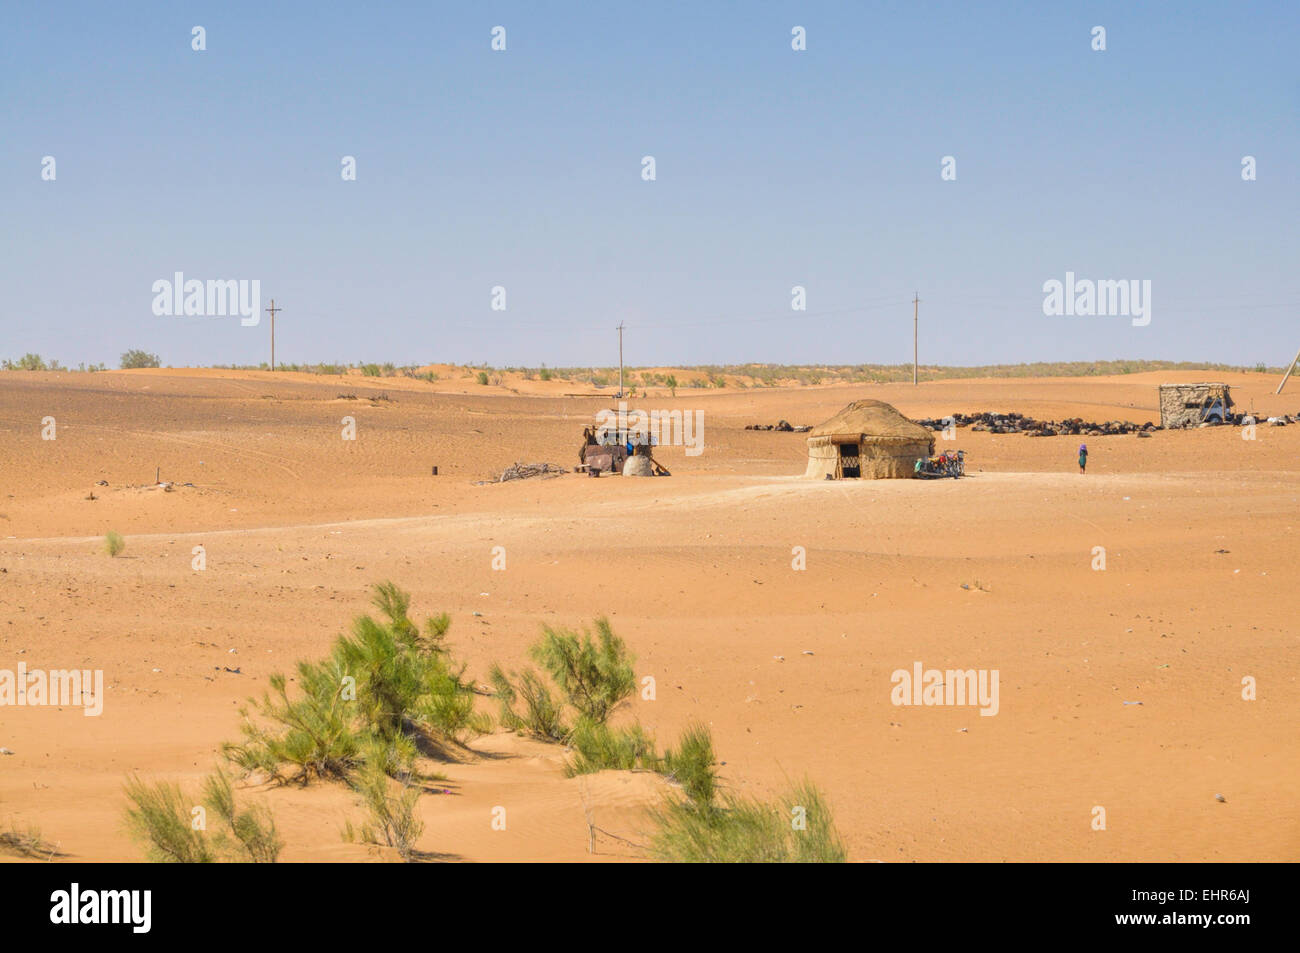 Yurt in the desert of Uzbekistan, central Asia Stock Photo